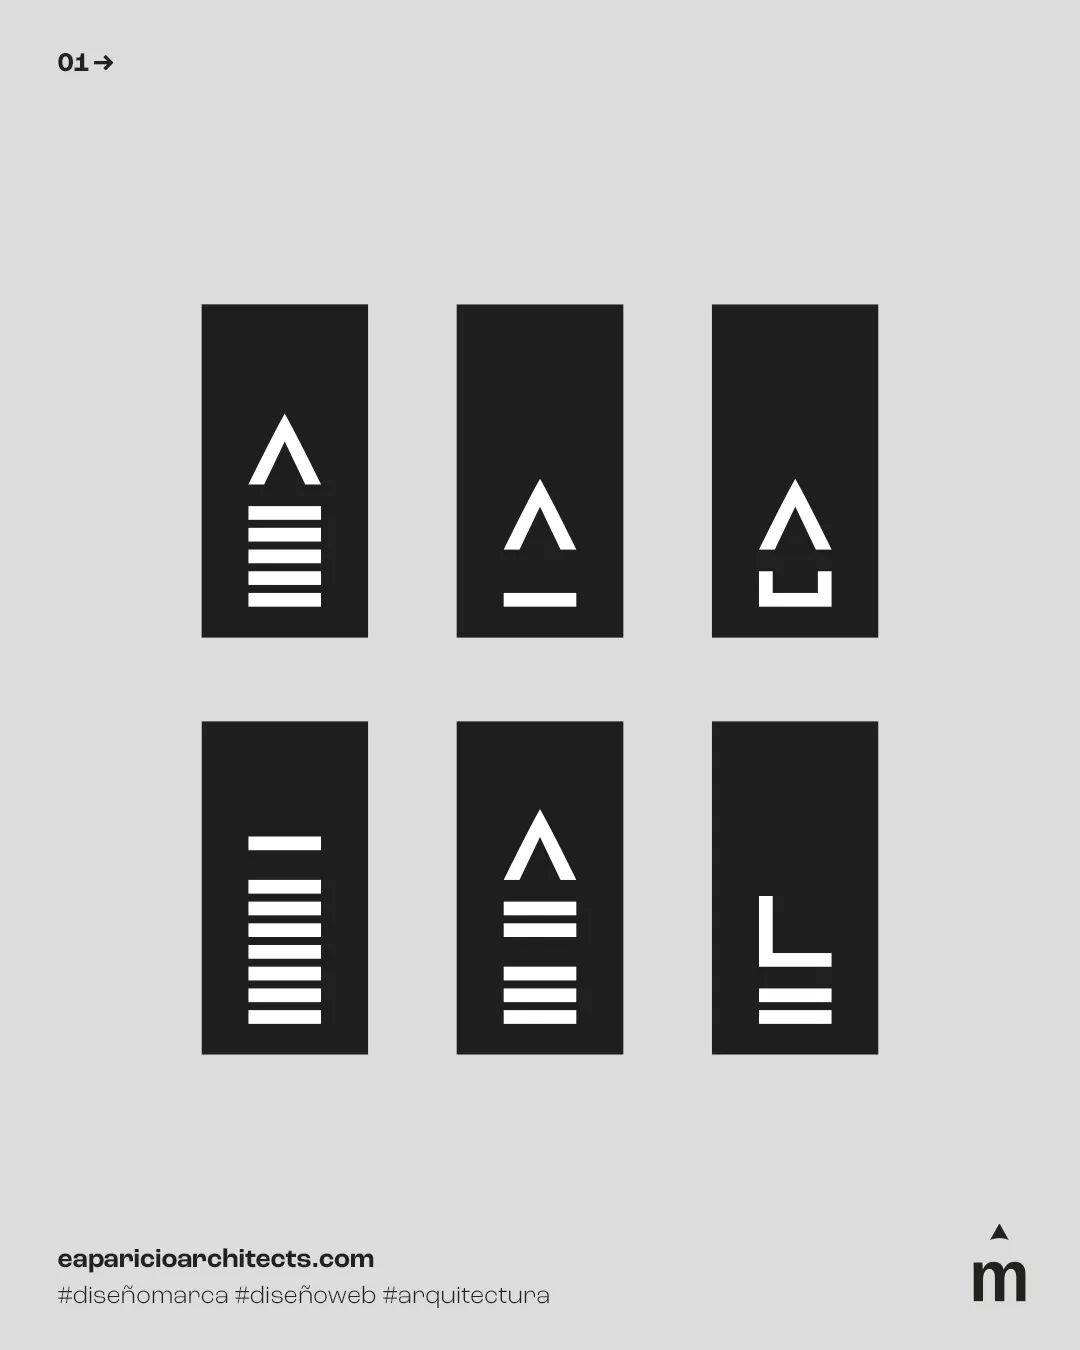 👉 PICTOGRAMAS/ partiendo del dise&ntilde;o del monograma del nuevo logo, cogimos los diferentes elementos que lo componen para reconstruir estos sencillos pictogramas que ilustran cada tipo de servicio. &iquest;A que molan?
. 
#BRANDING #DISE&Ntilde